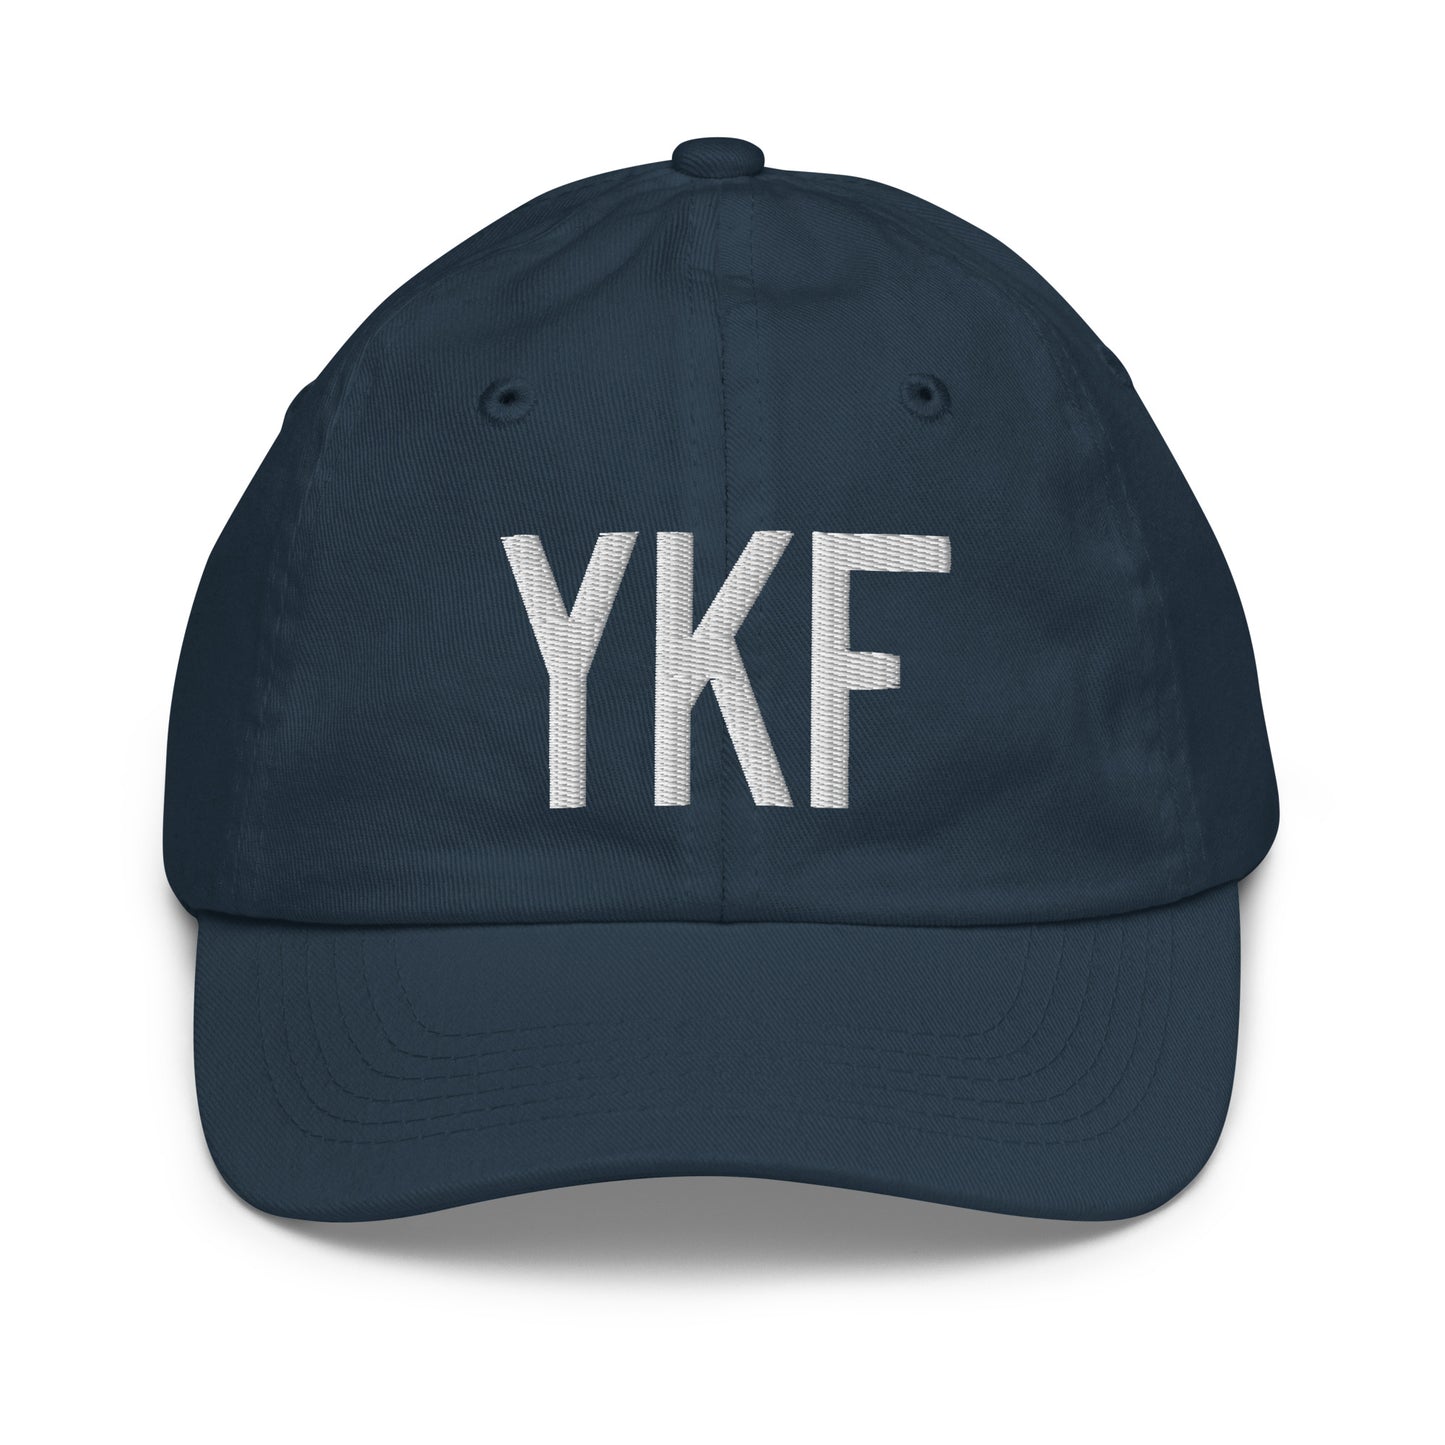 Airport Code Kid's Baseball Cap - White • YKF Waterloo • YHM Designs - Image 14